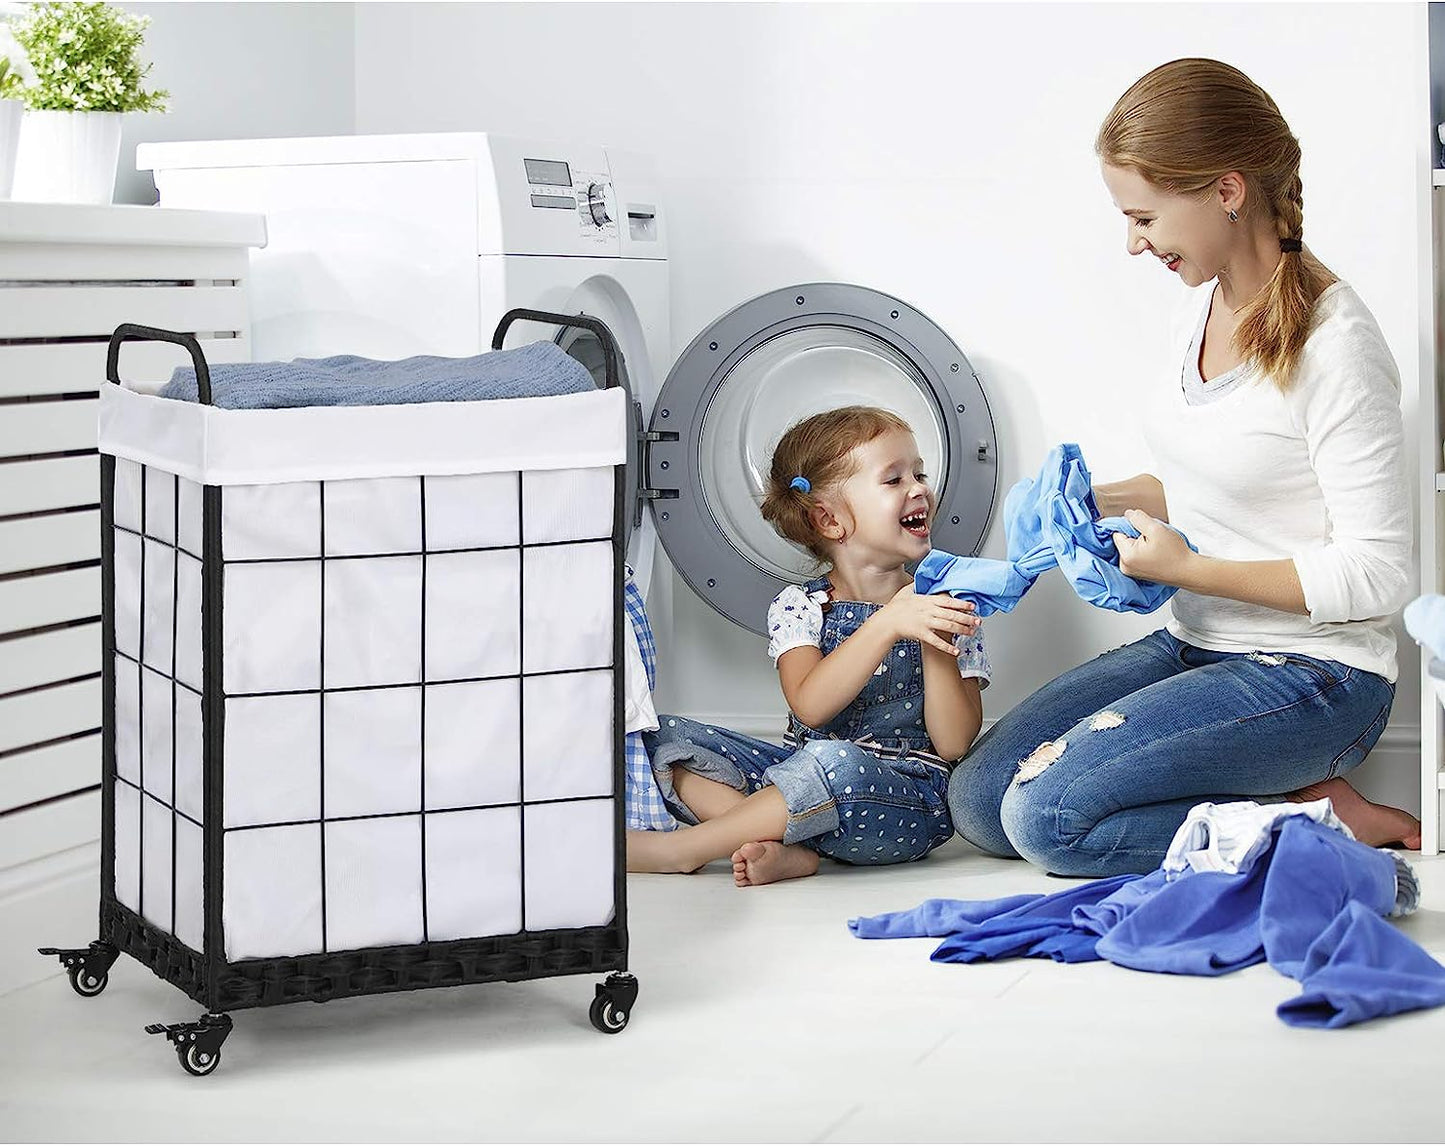 Laundry Hamper with Heavy Duty Rolling Lockable Wheels